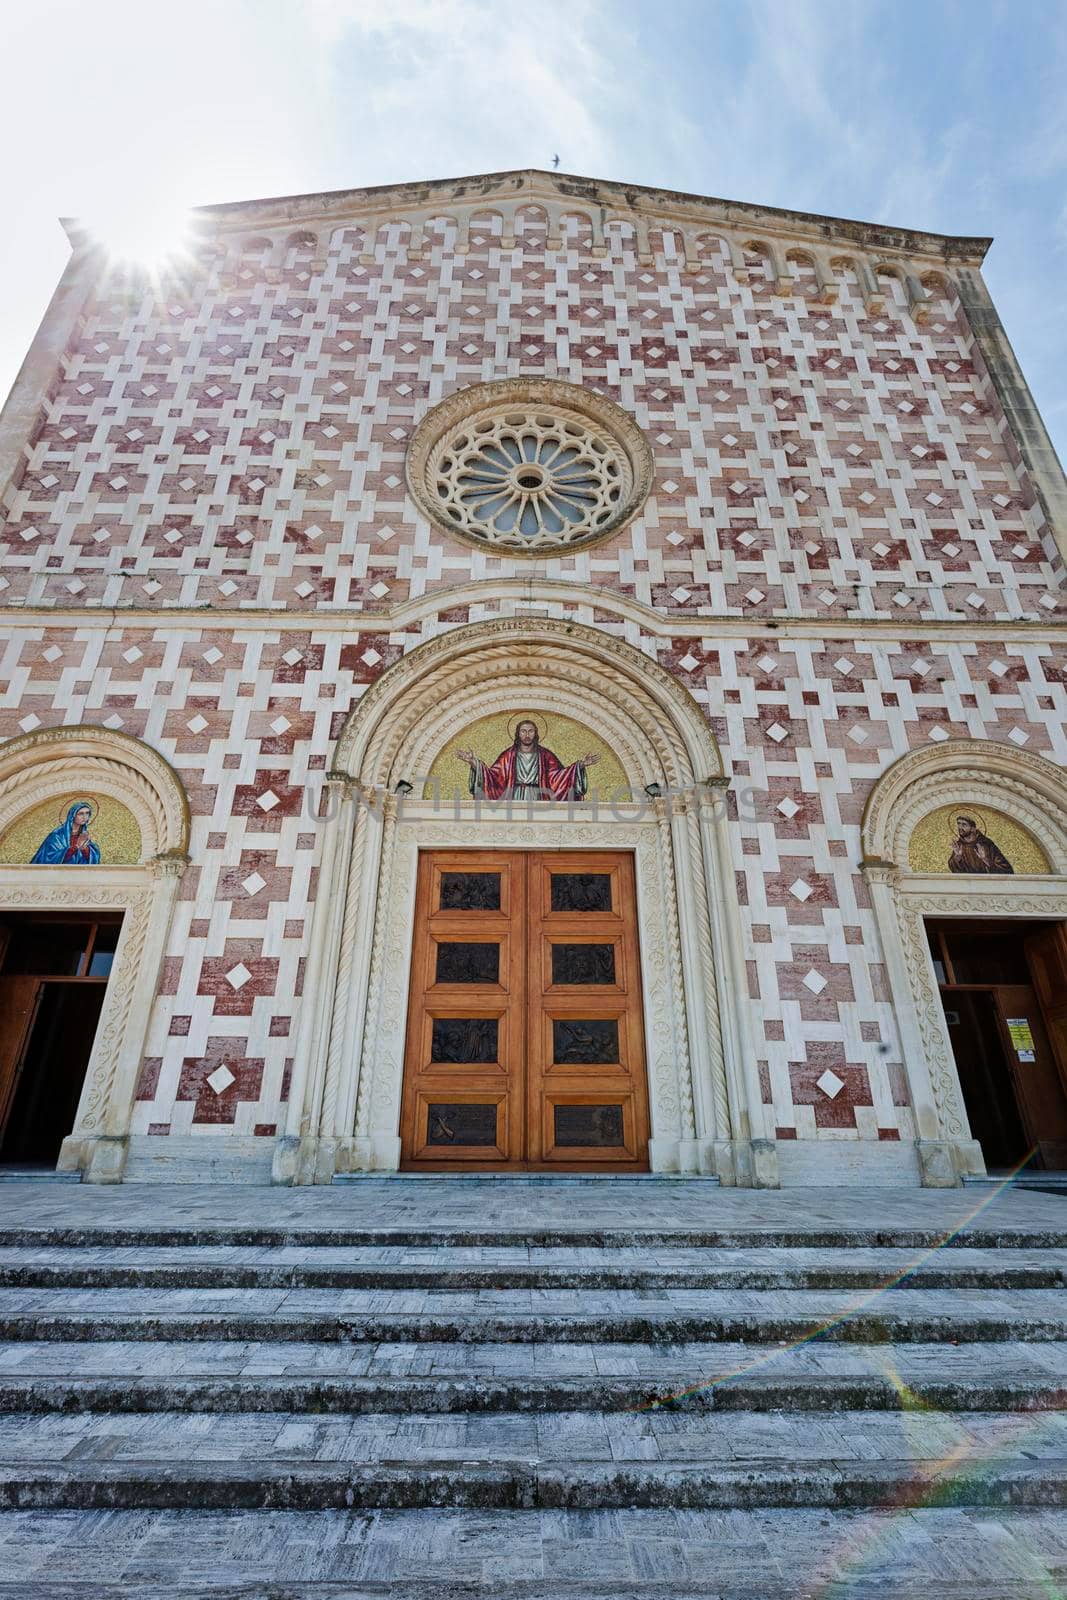 Church of the Volto Santo di Manoppello. Manopello, Abruzzo, Italy